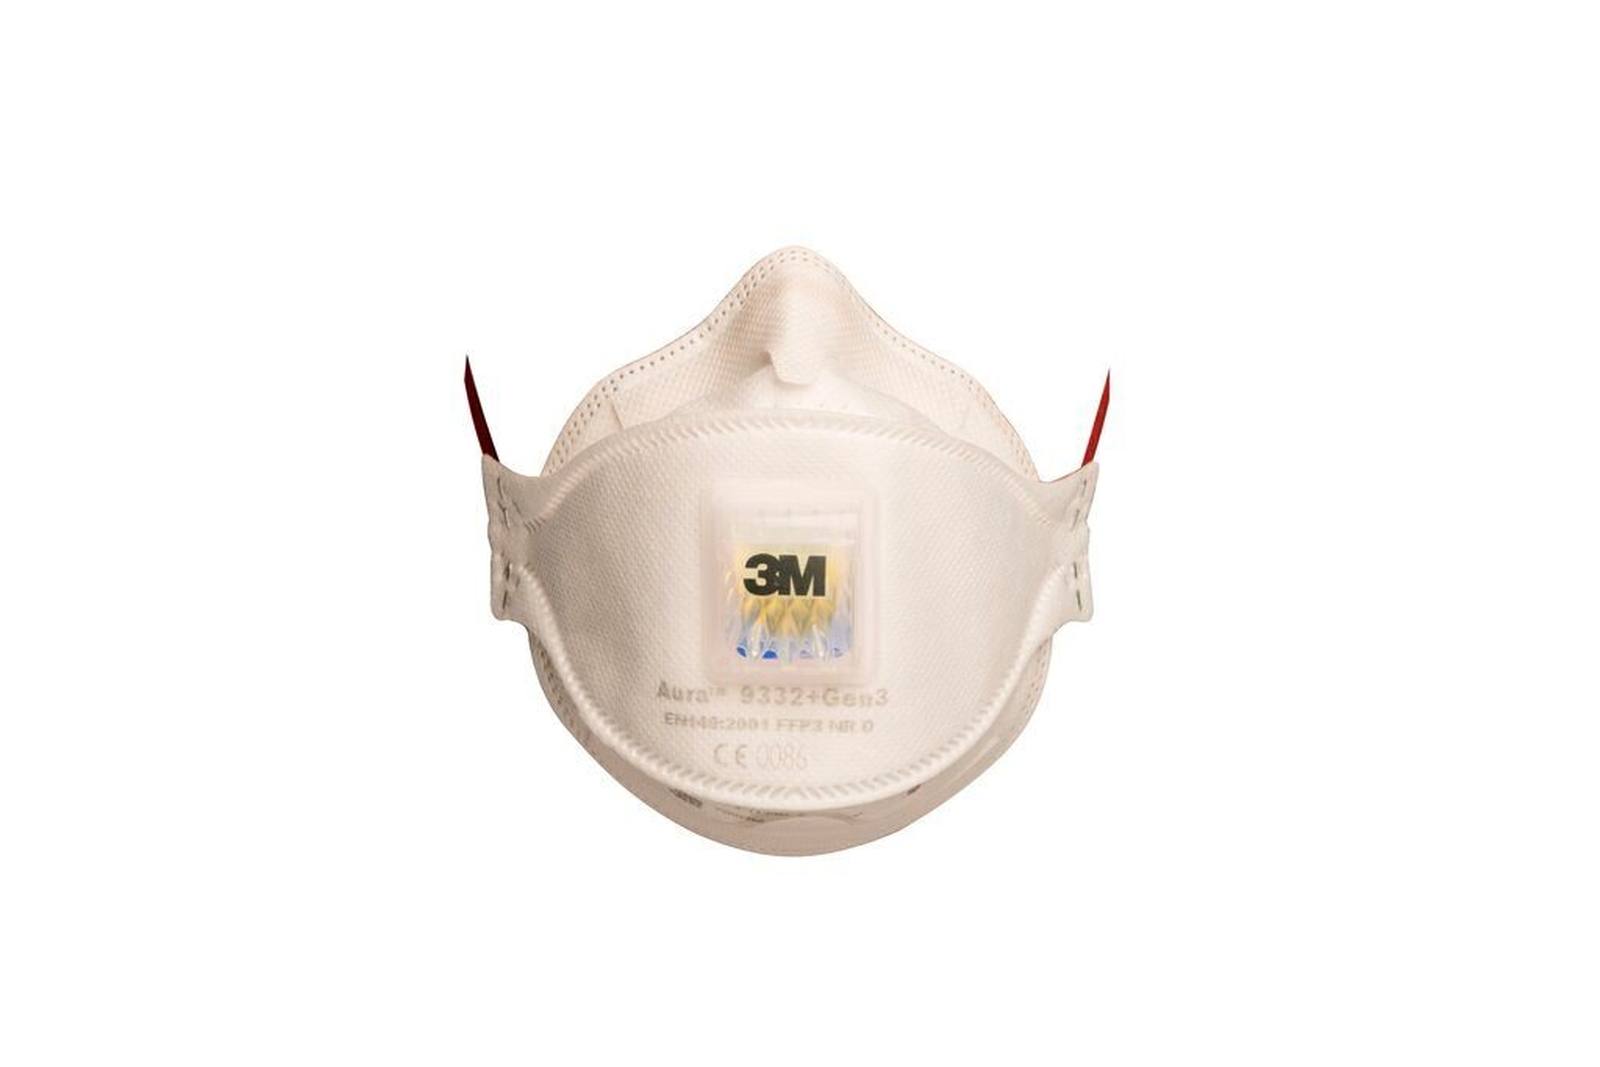 3M 9332+ Gen3 SV Aura Atemschutzmaske FFP3 mit Cool-Flow Ausatemventil, bis zum 30-fachen des Grenzwertes (hygienisch einzelverpackt), Kleinpackung